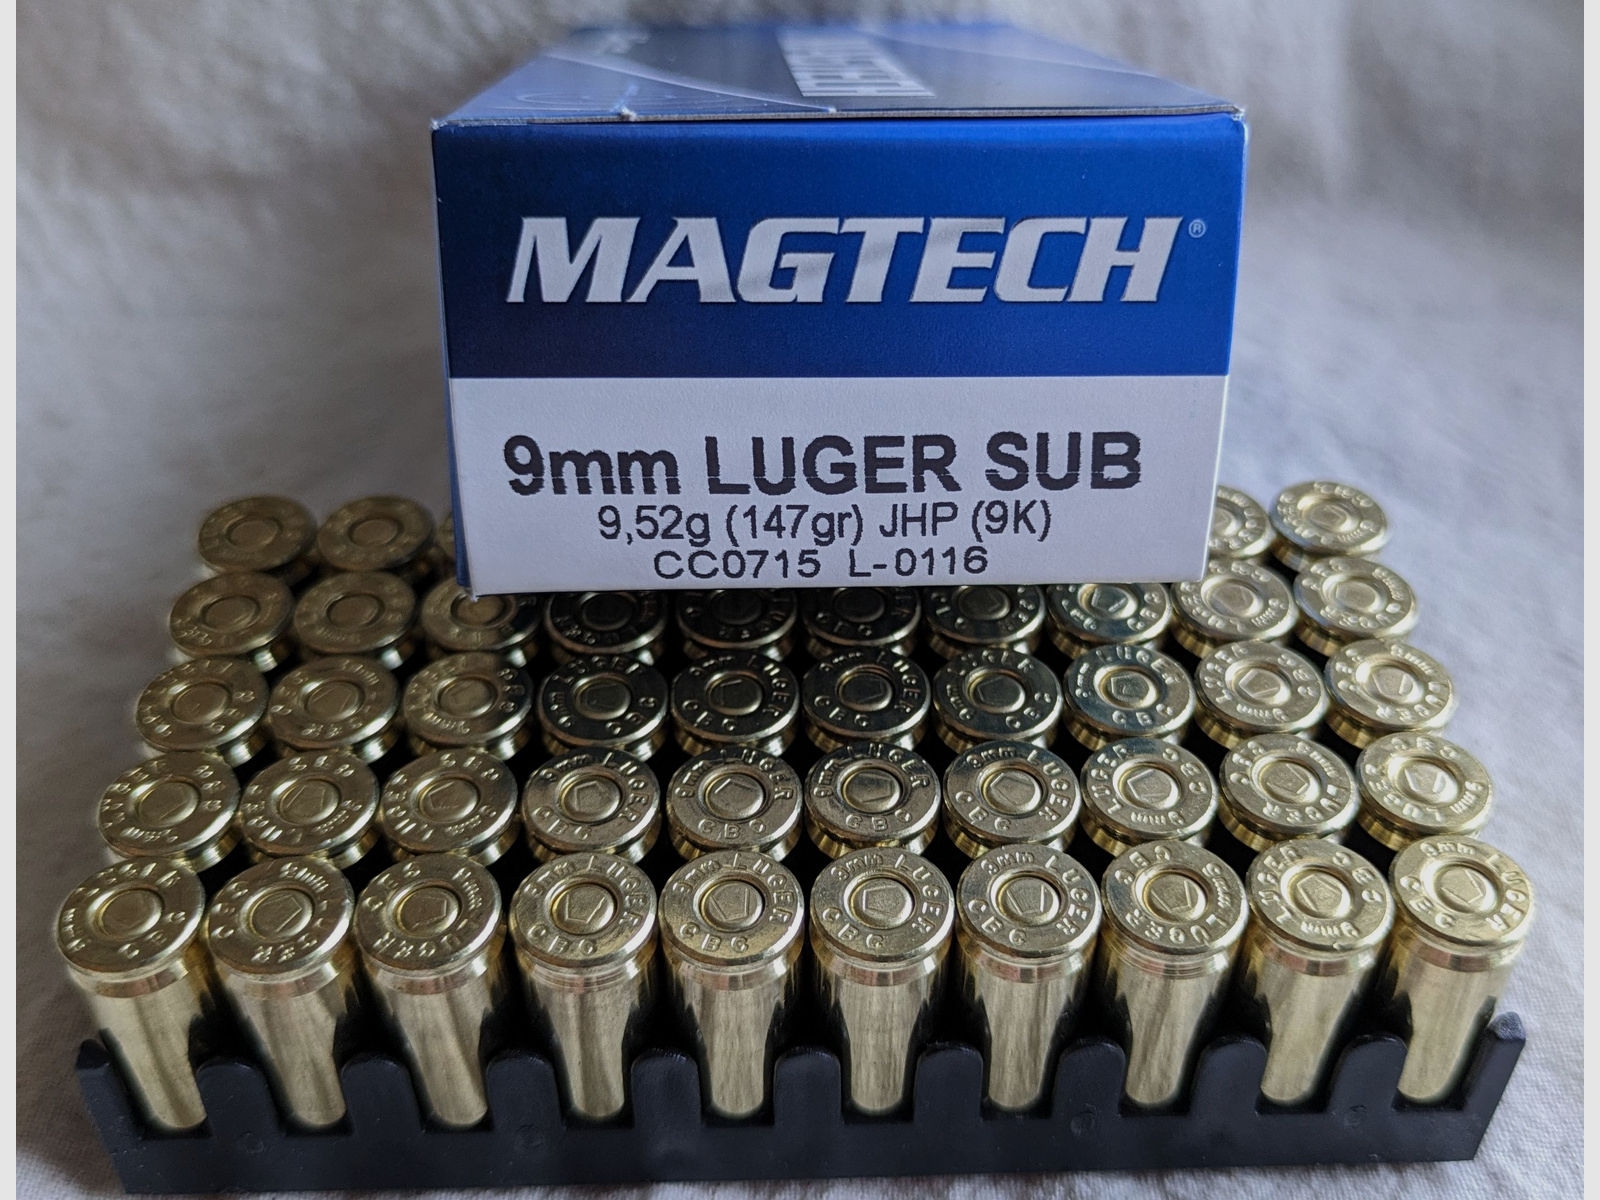 Magtech 9mm Luger SUB 147gr JHP °°°°°°°°°°°°°°°°°